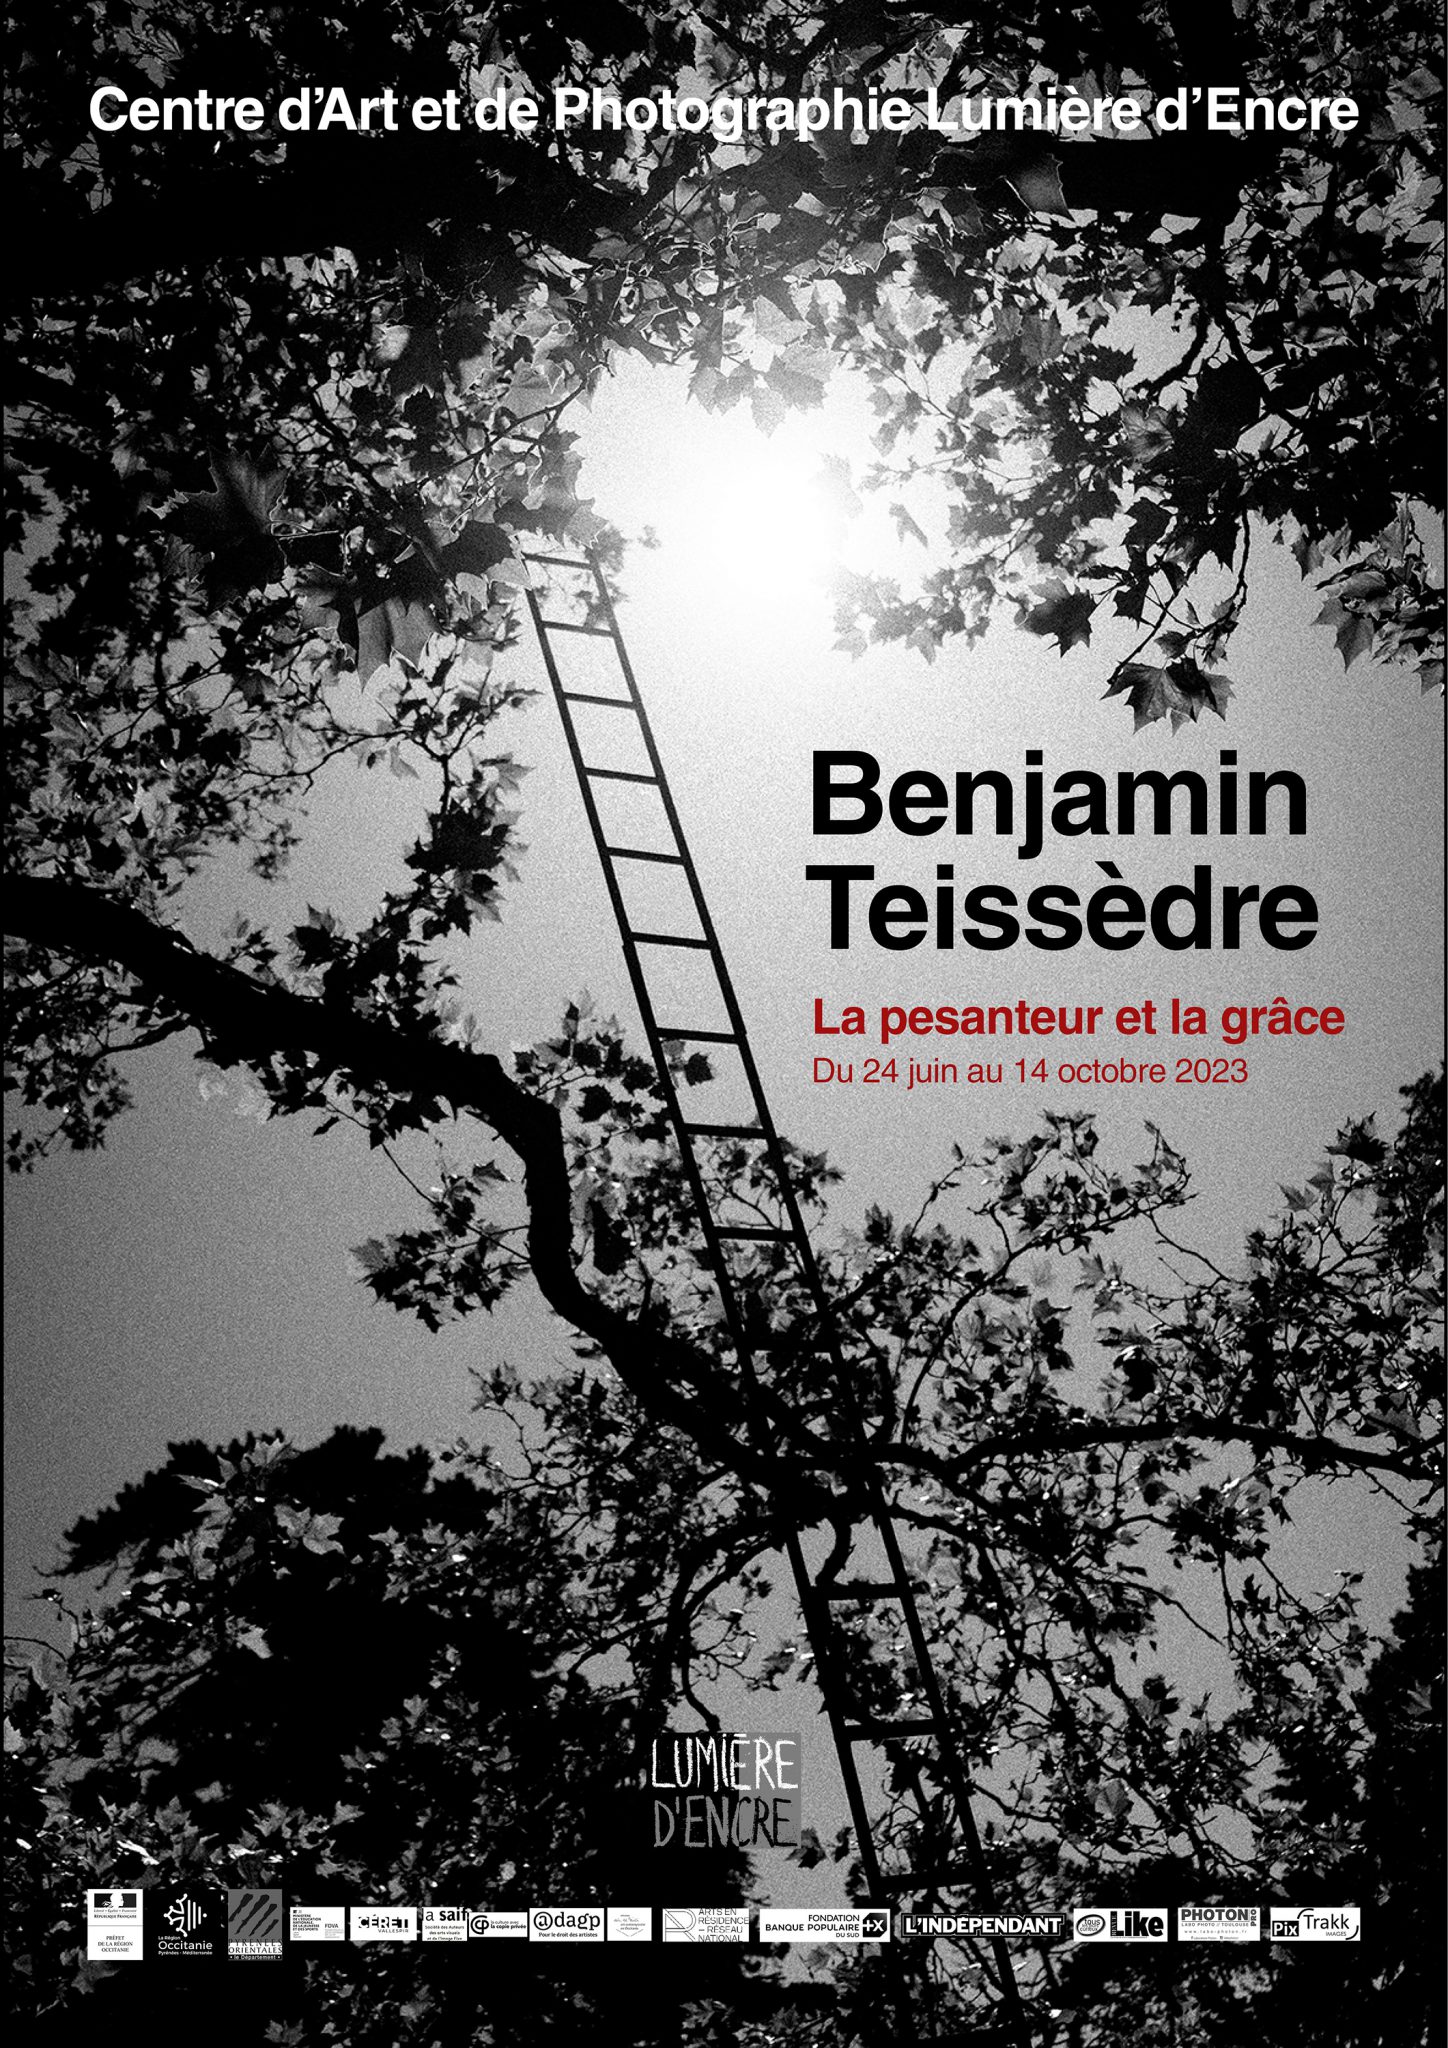 Benjamin Teissèdre: La pesanteur et la grâce